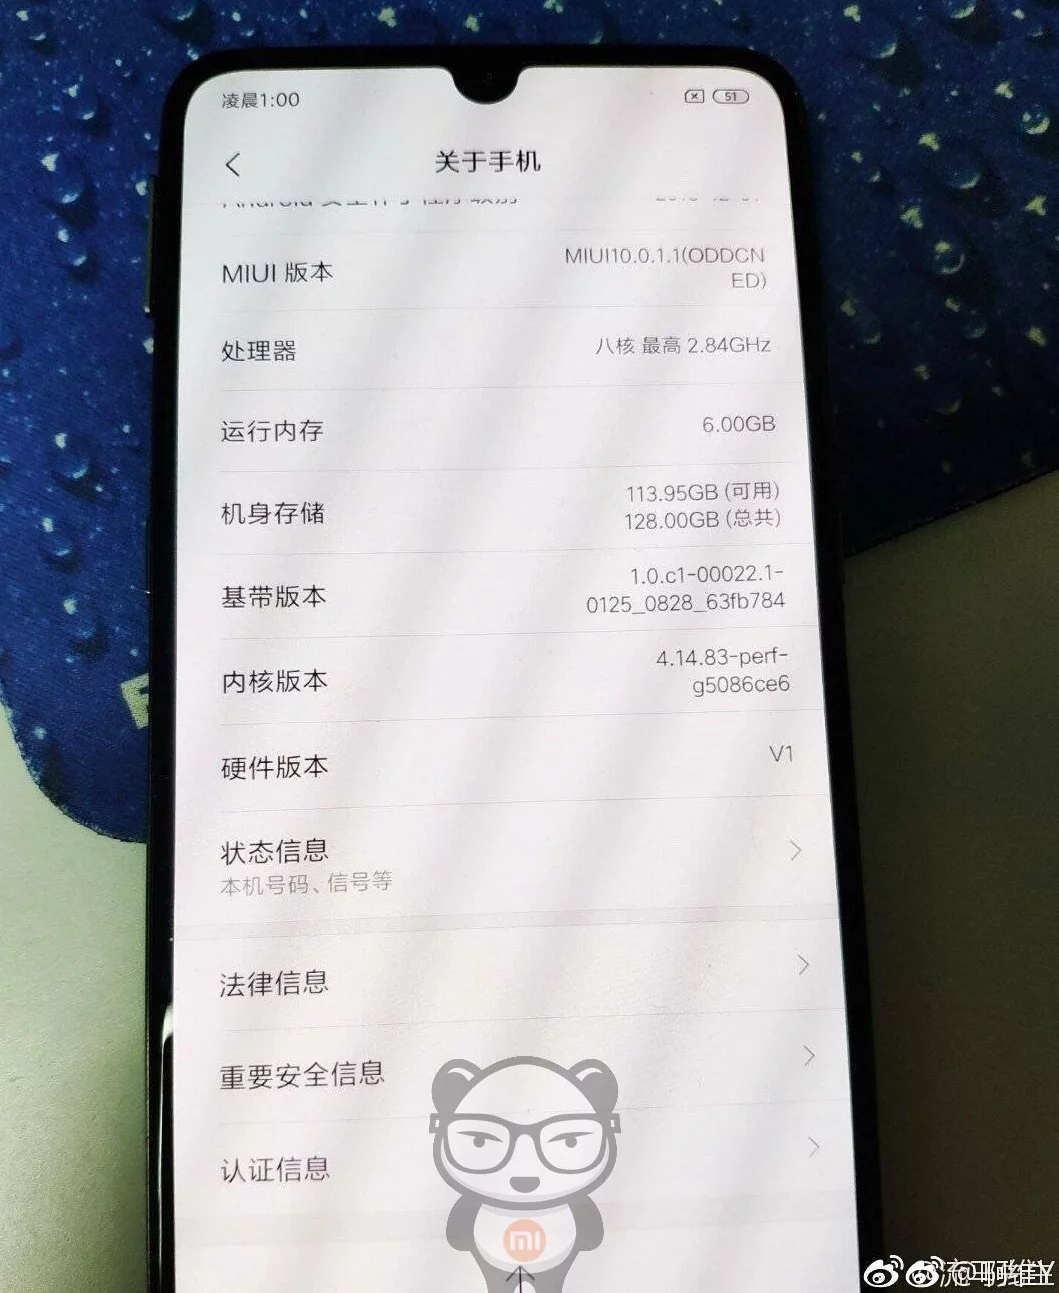 Xiaomi Mi 9 çalışır halde görüntülendi